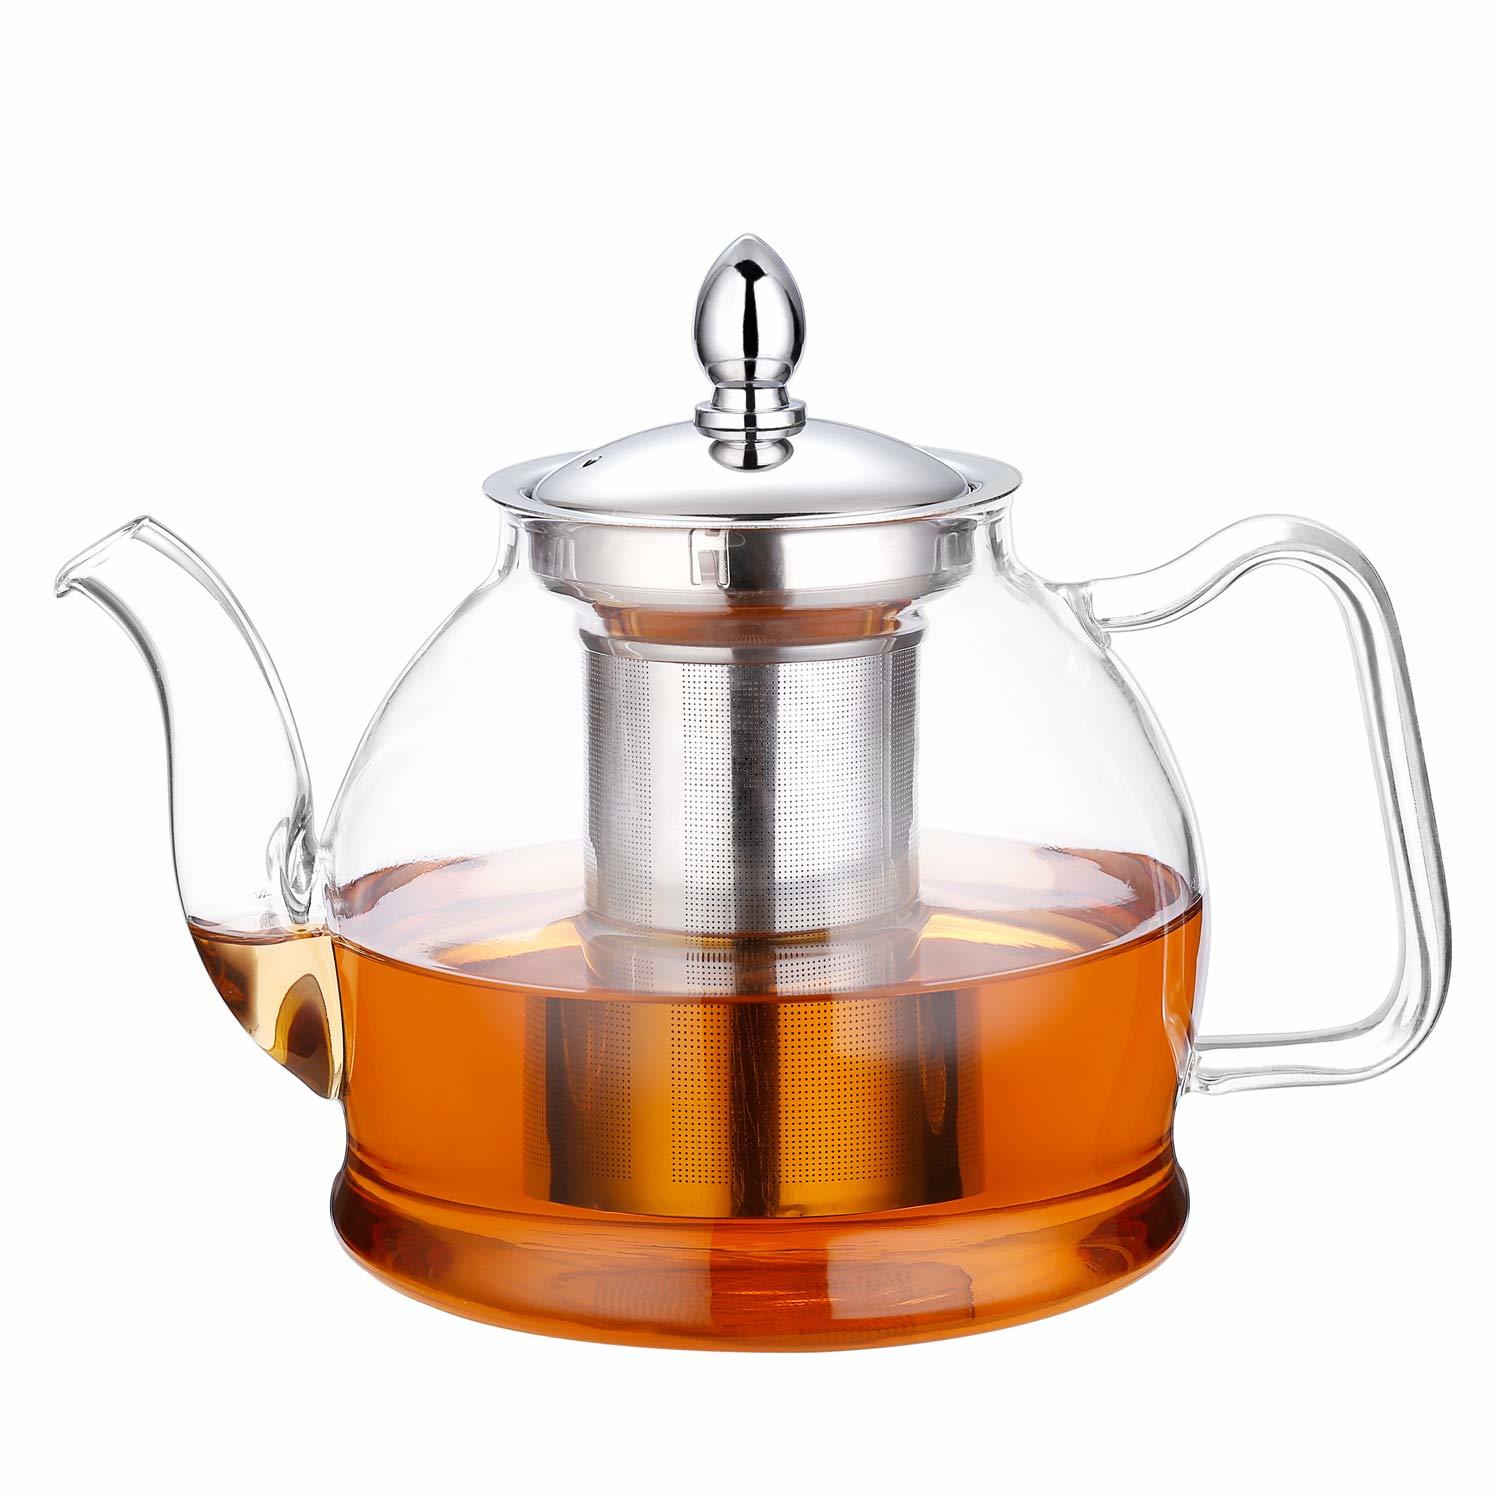 https://thebrooklynrefinery.com/wp-content/uploads/2019/10/Glass-Teapot.jpg